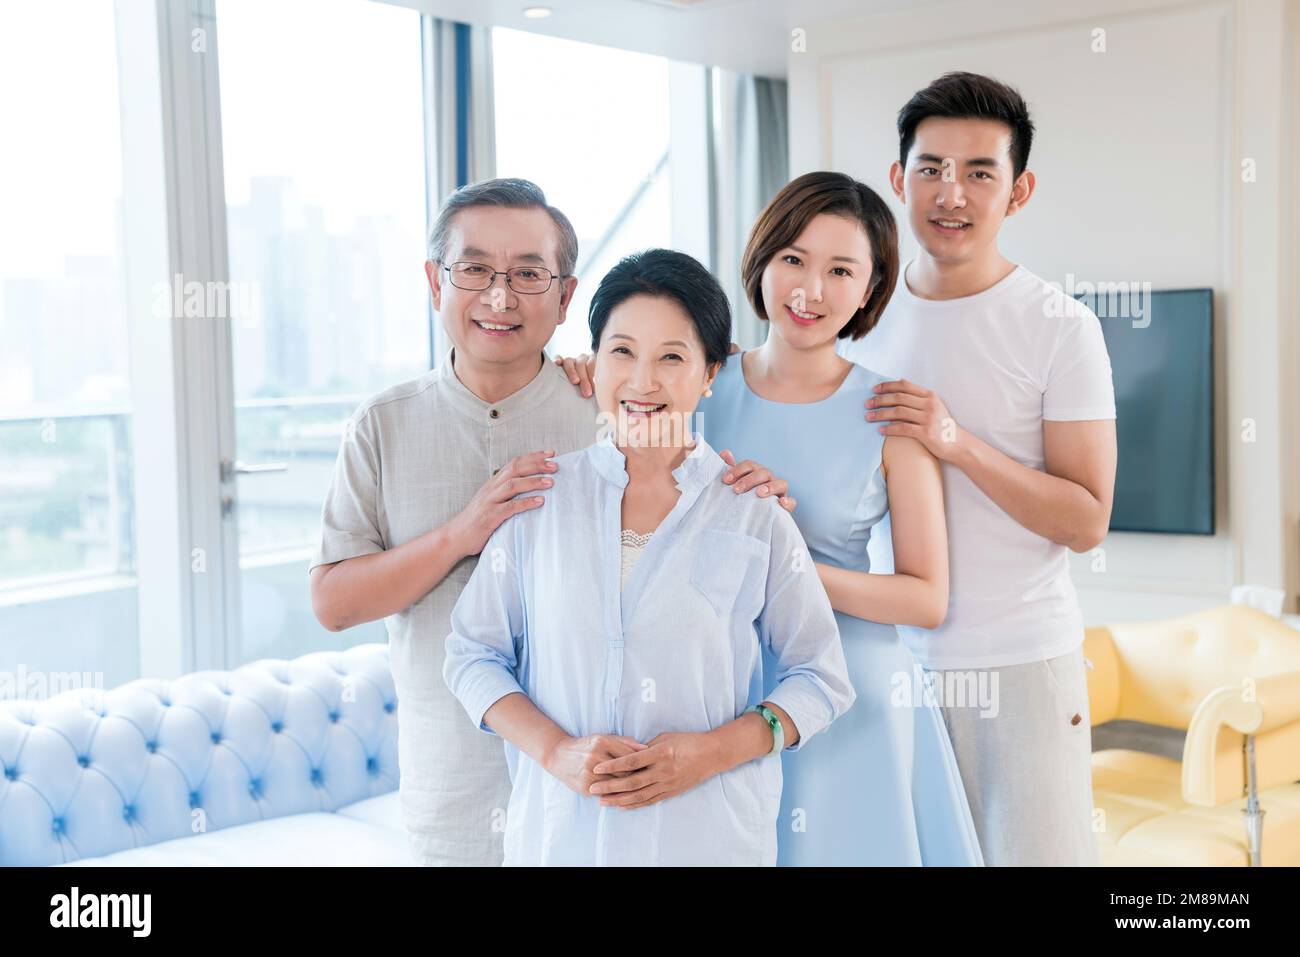 The happy family Stock Photo